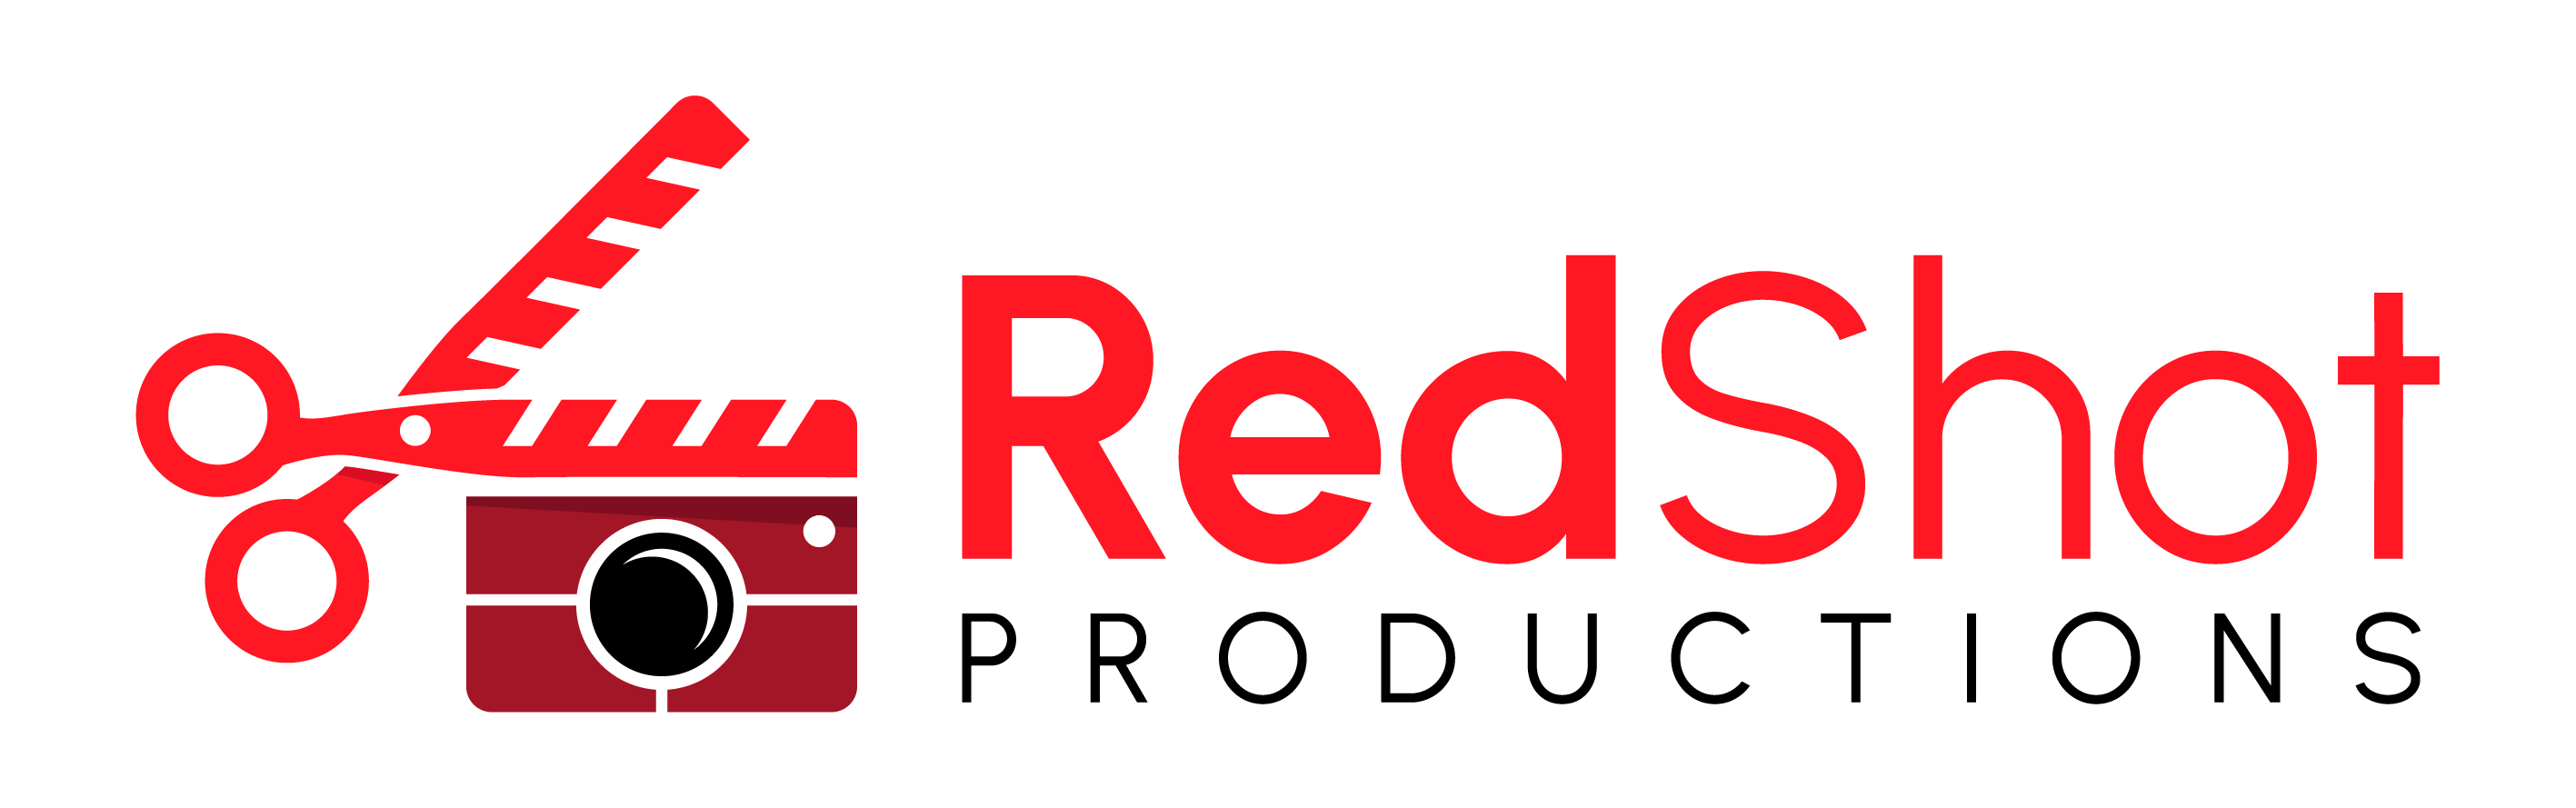 RedShot Productions LOGO